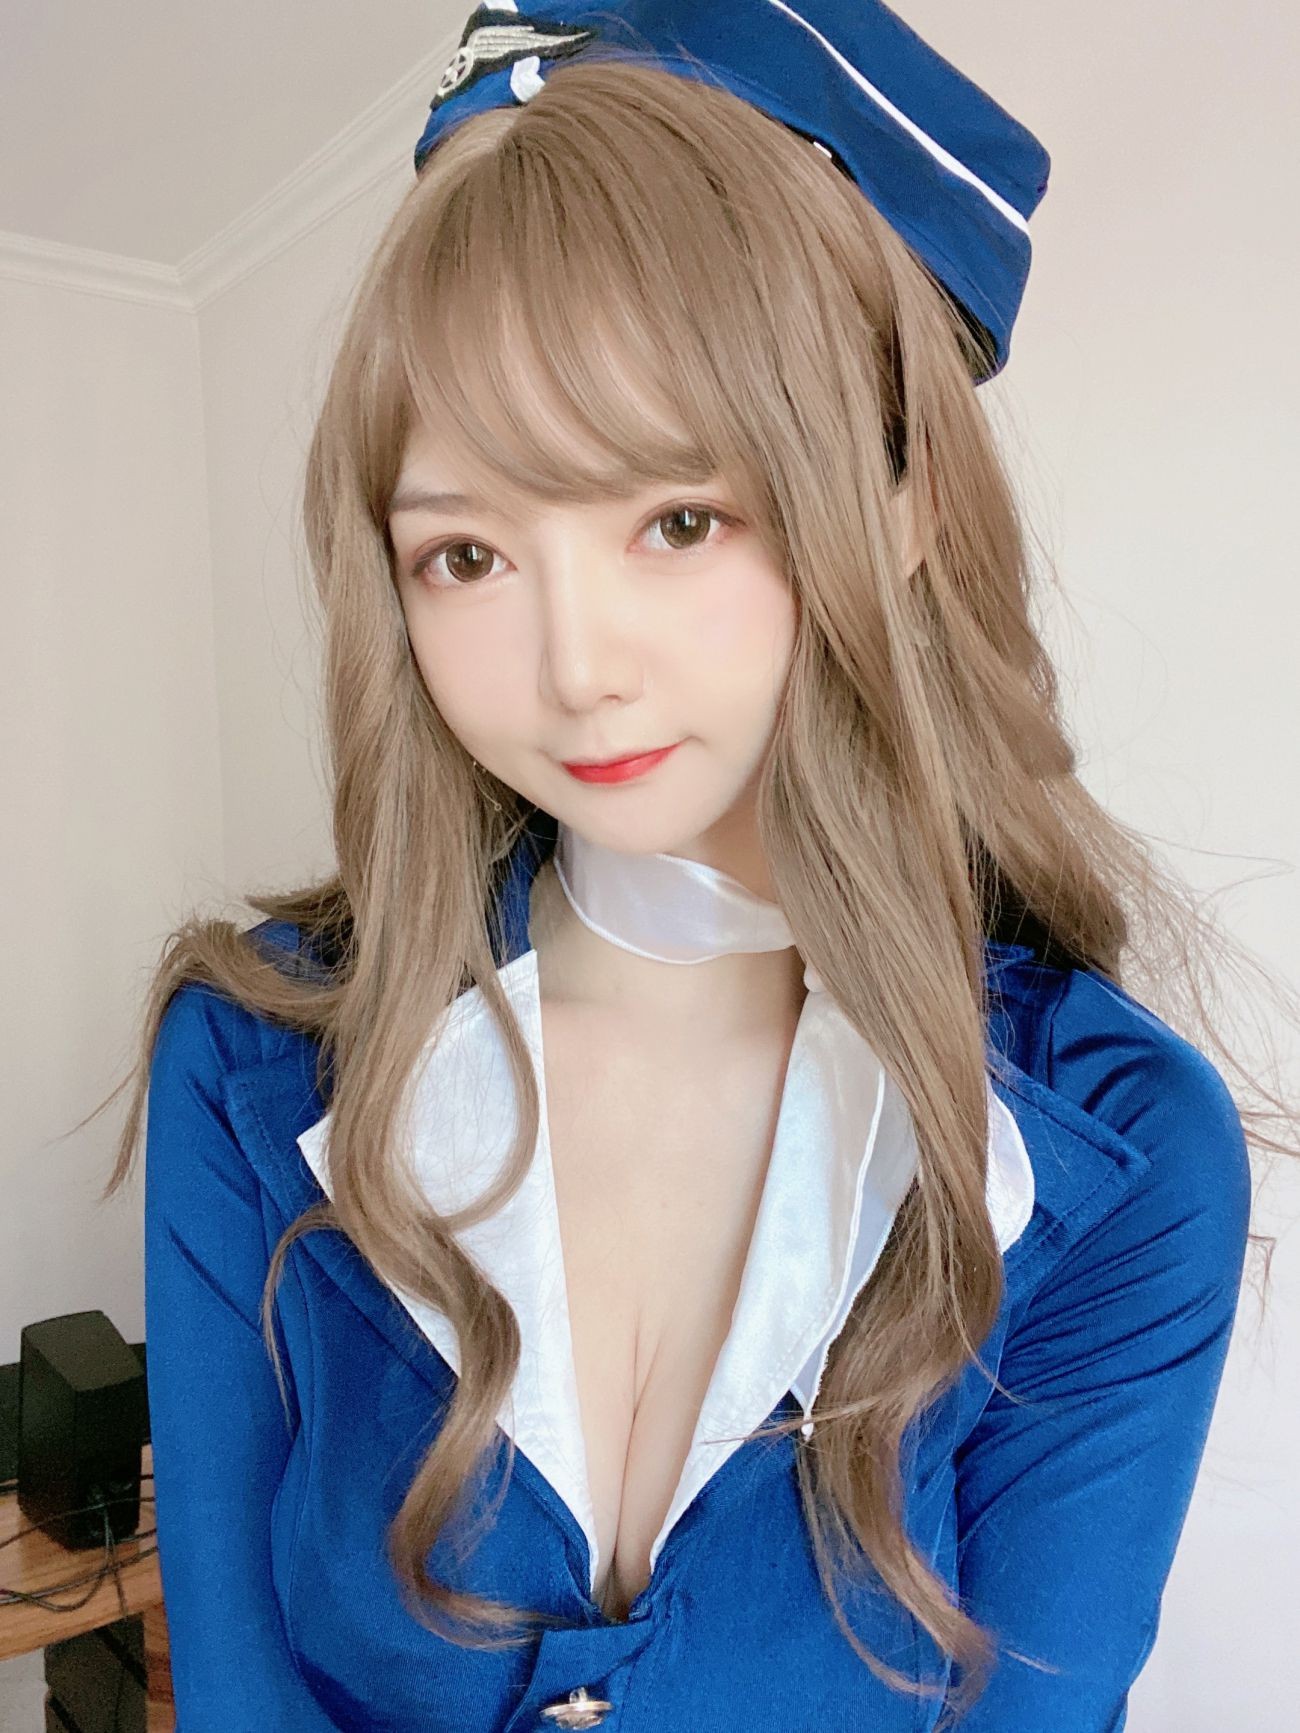 微博美少女51酱性感写真蓝色制服装 (33)